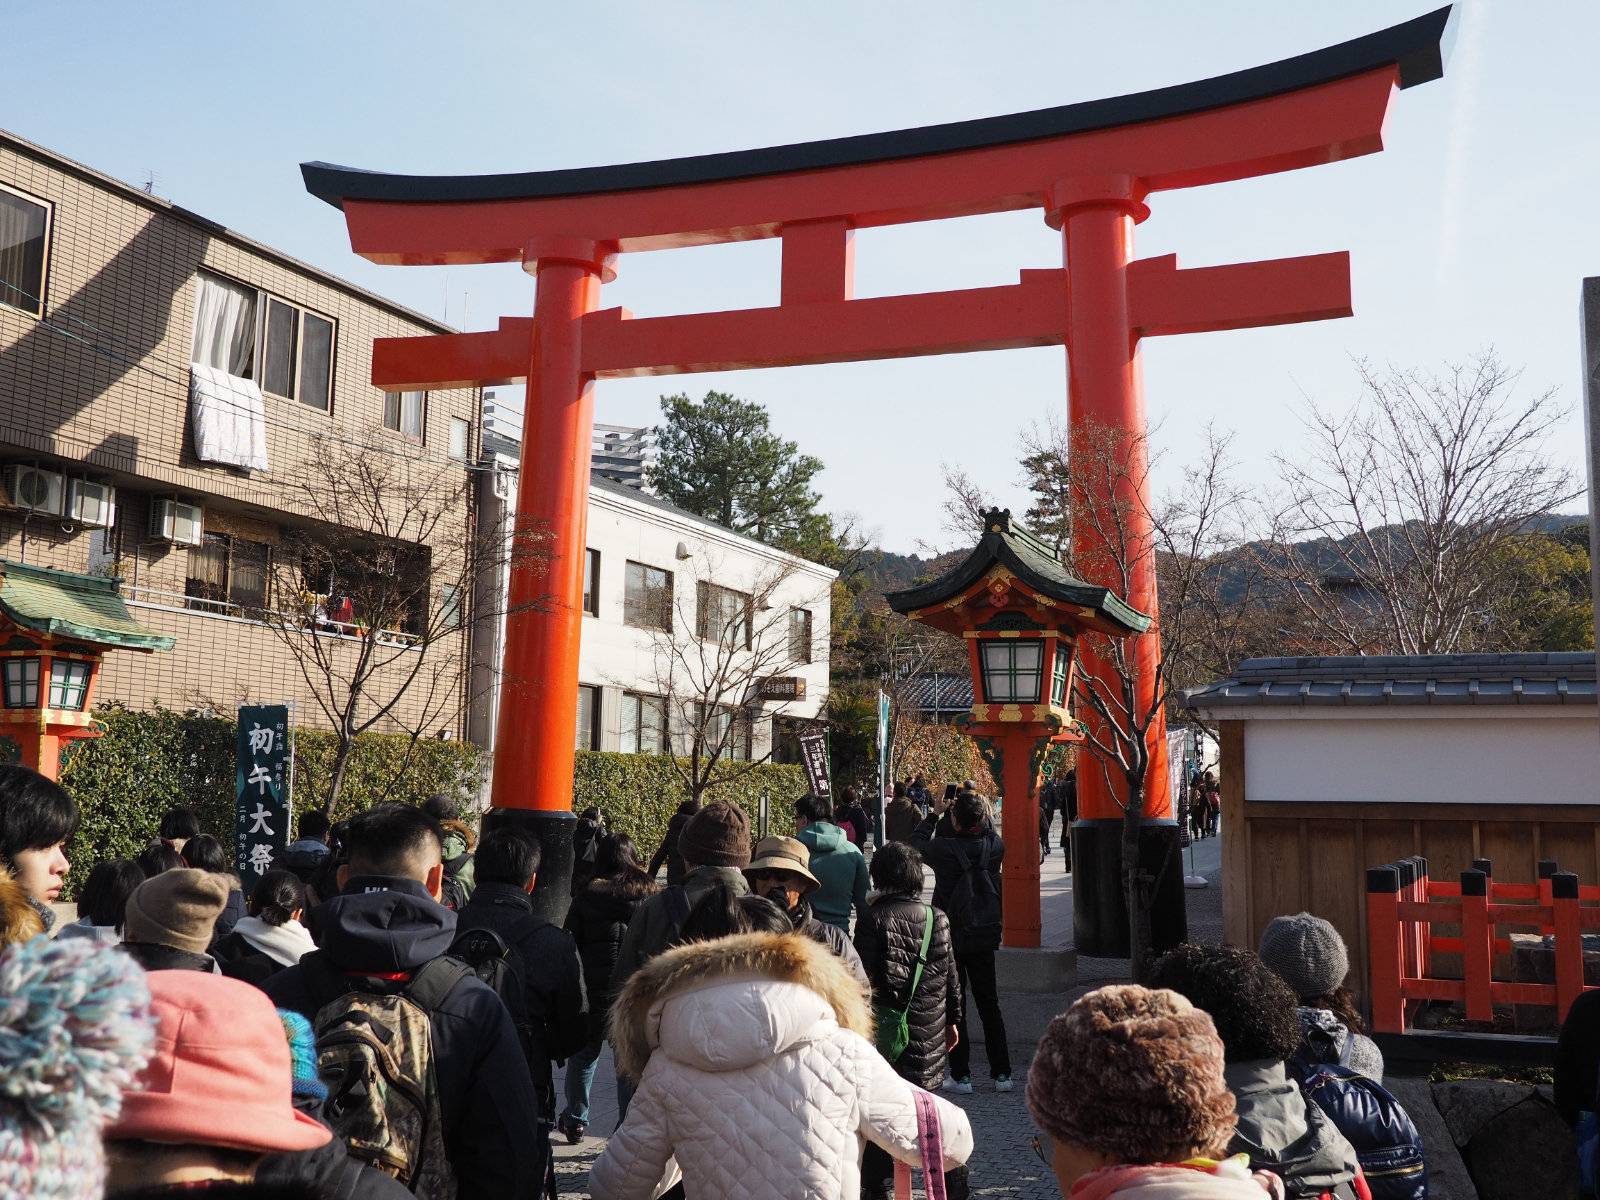 Entrance to Fushimi-Inari Taisha